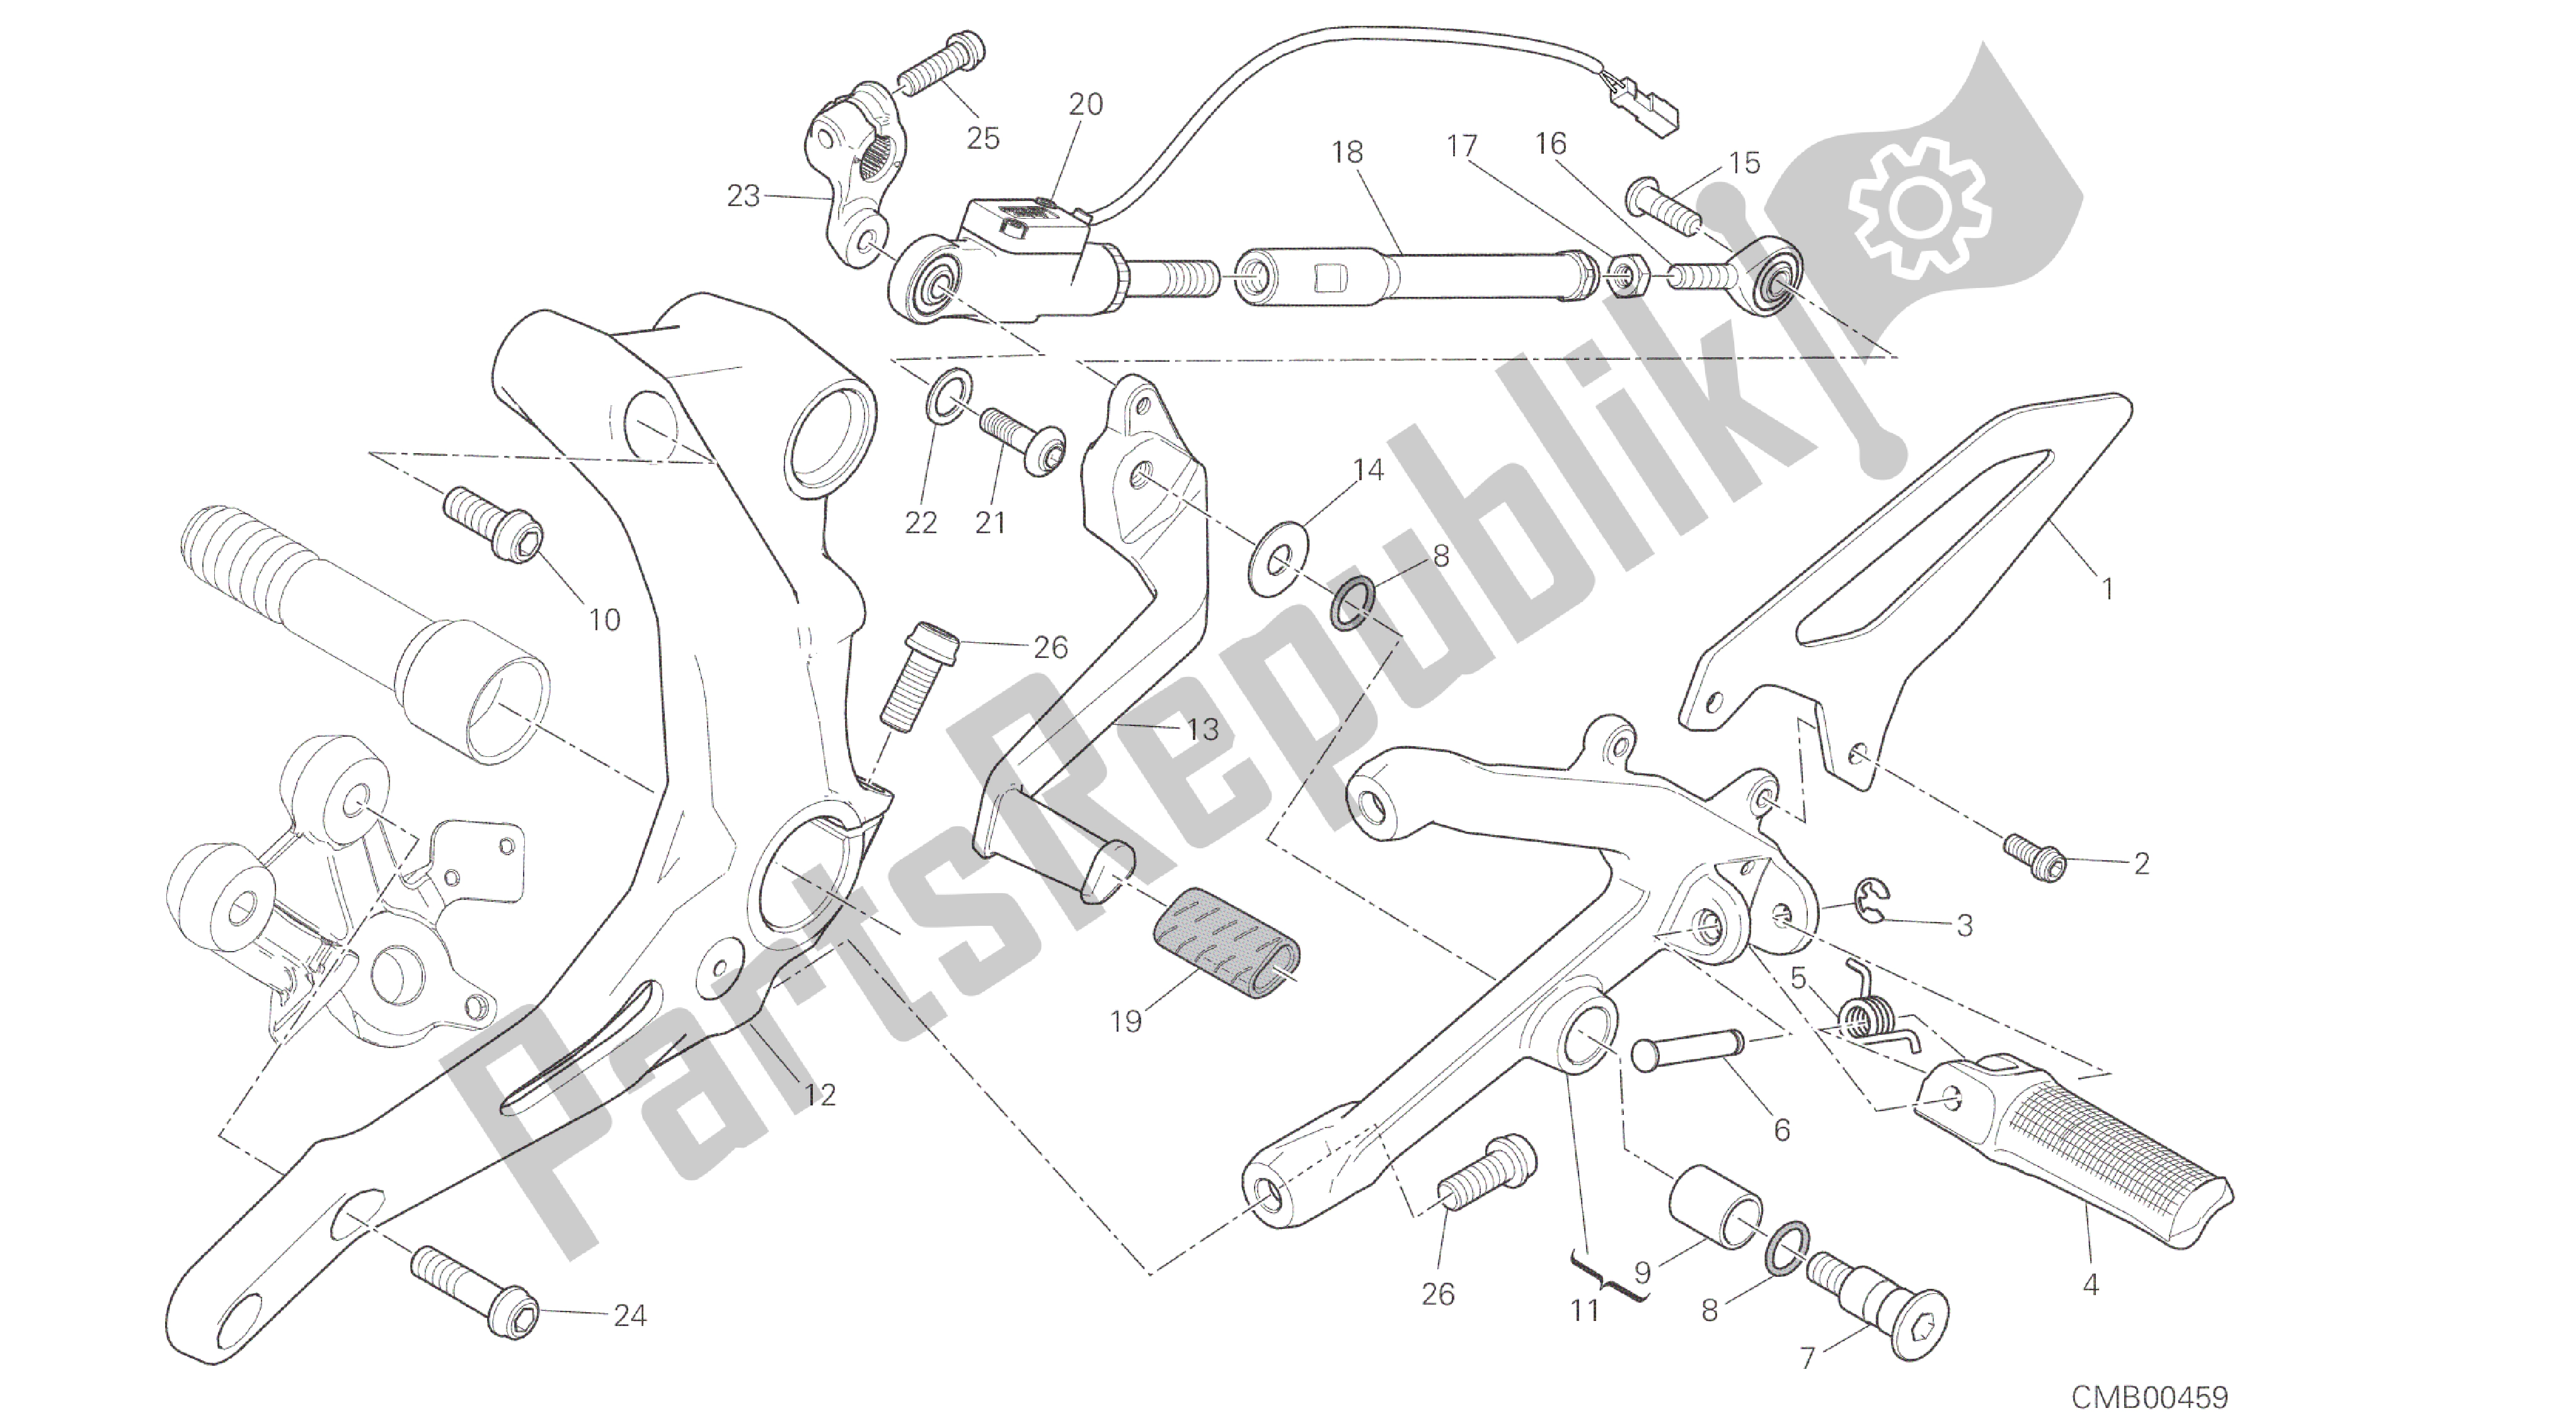 Todas as partes de Desenho 016 - Apoios Para Os Pés, Quadro De Grupo Esquerdo [mod: 959. 959 Aws] do Ducati Panigale 959 2016